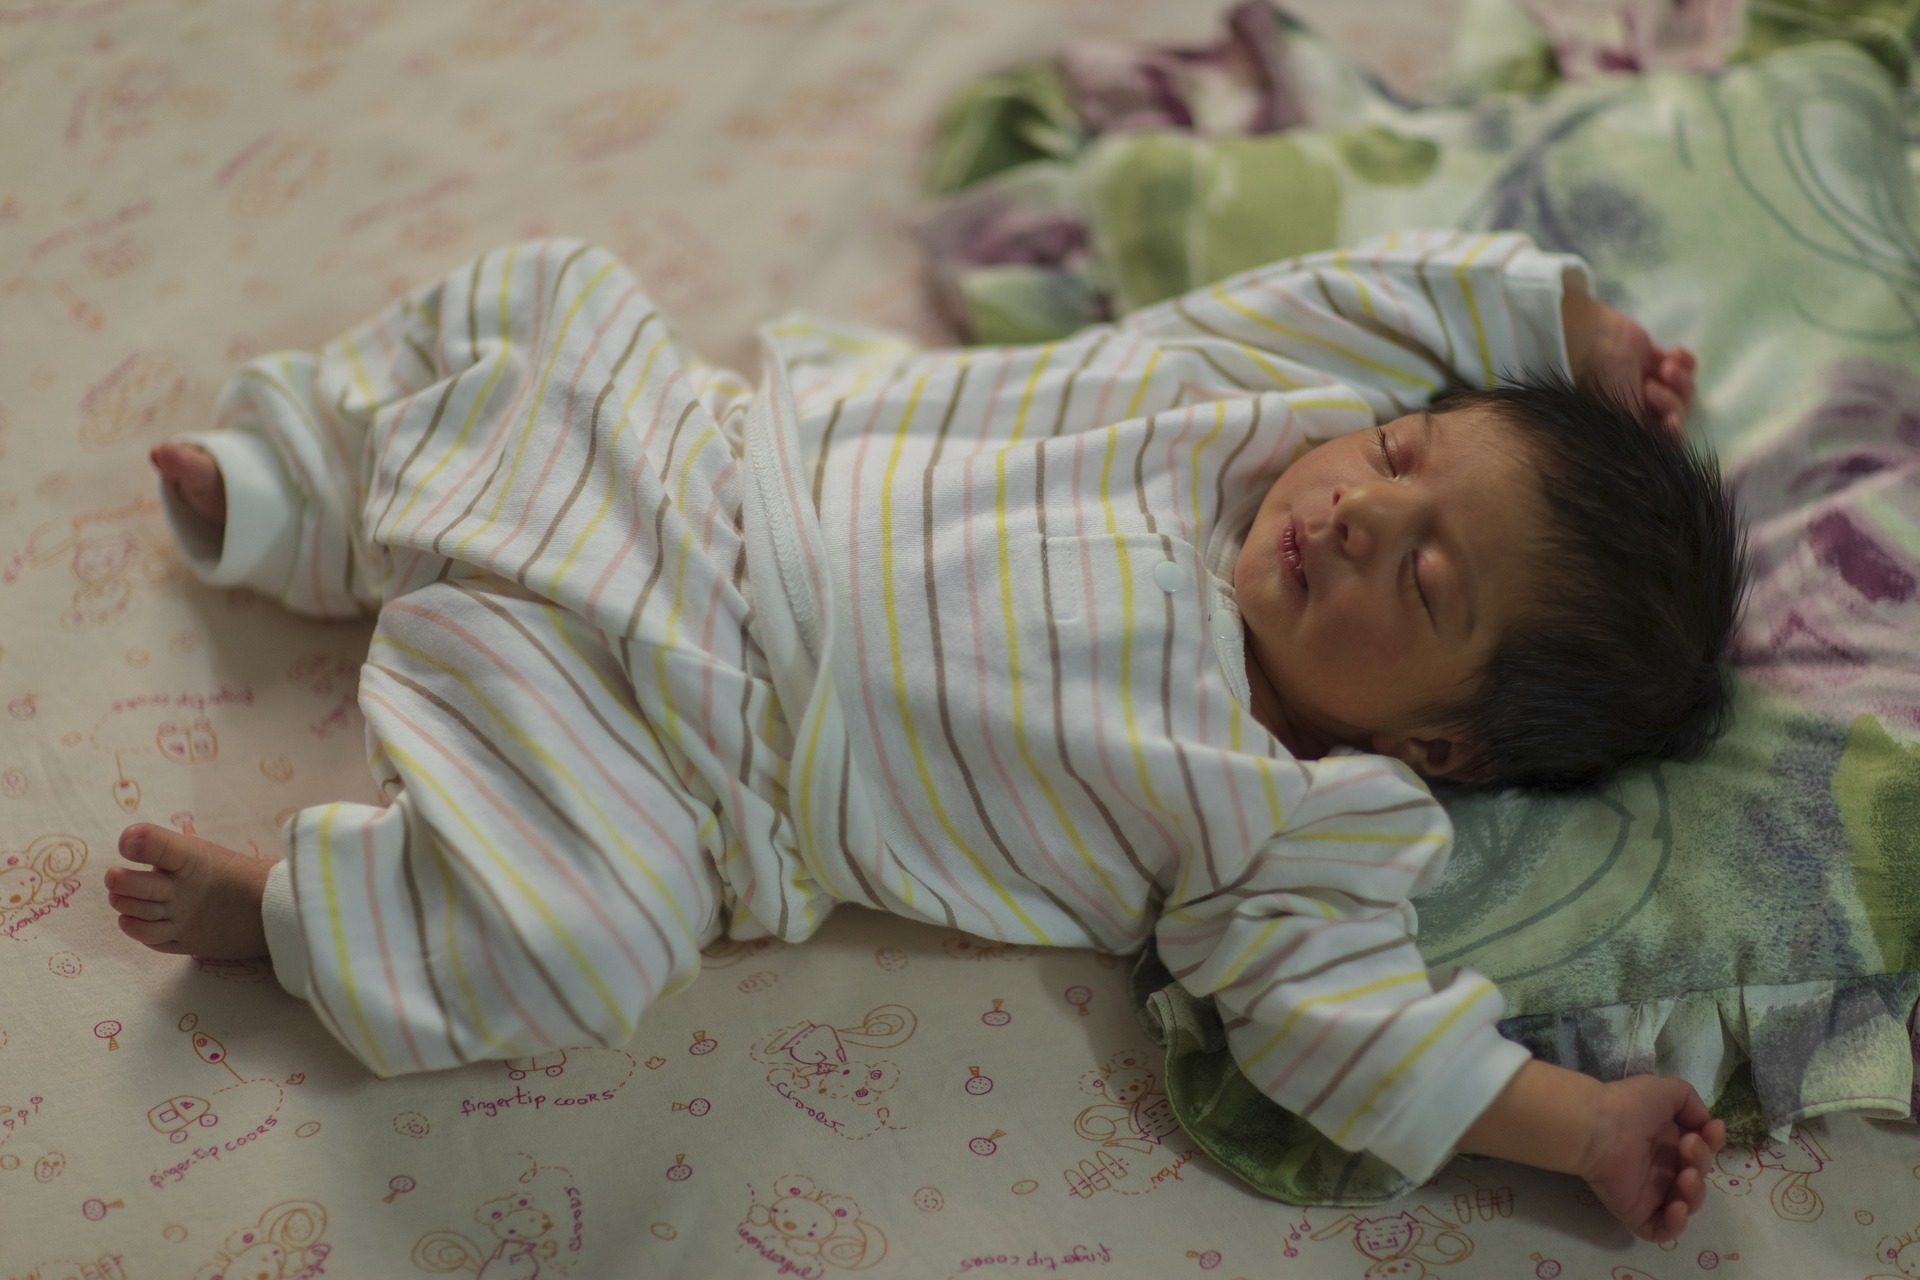 Tapis montessori pour bébé en coton bio - Matelas de sol